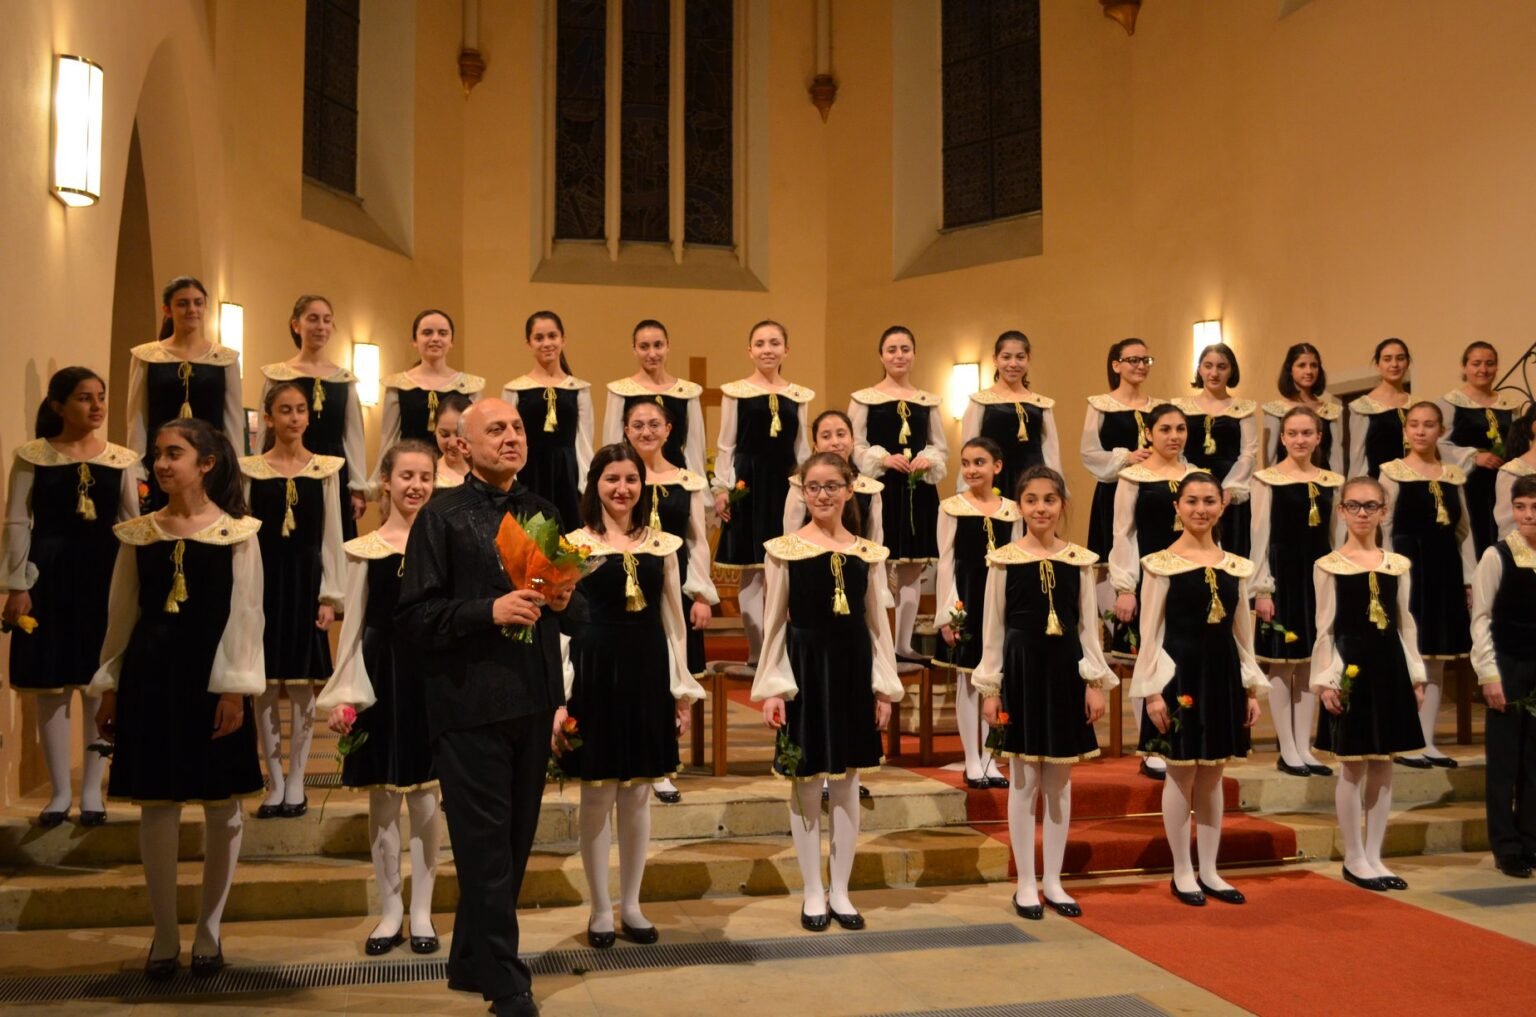 Հայկական երգչախմբերը Վիեննայի հեղինակավոր «Խաղաղություն աշխարհին» մրցույթում նվաճել են գլխավոր մրցանակները